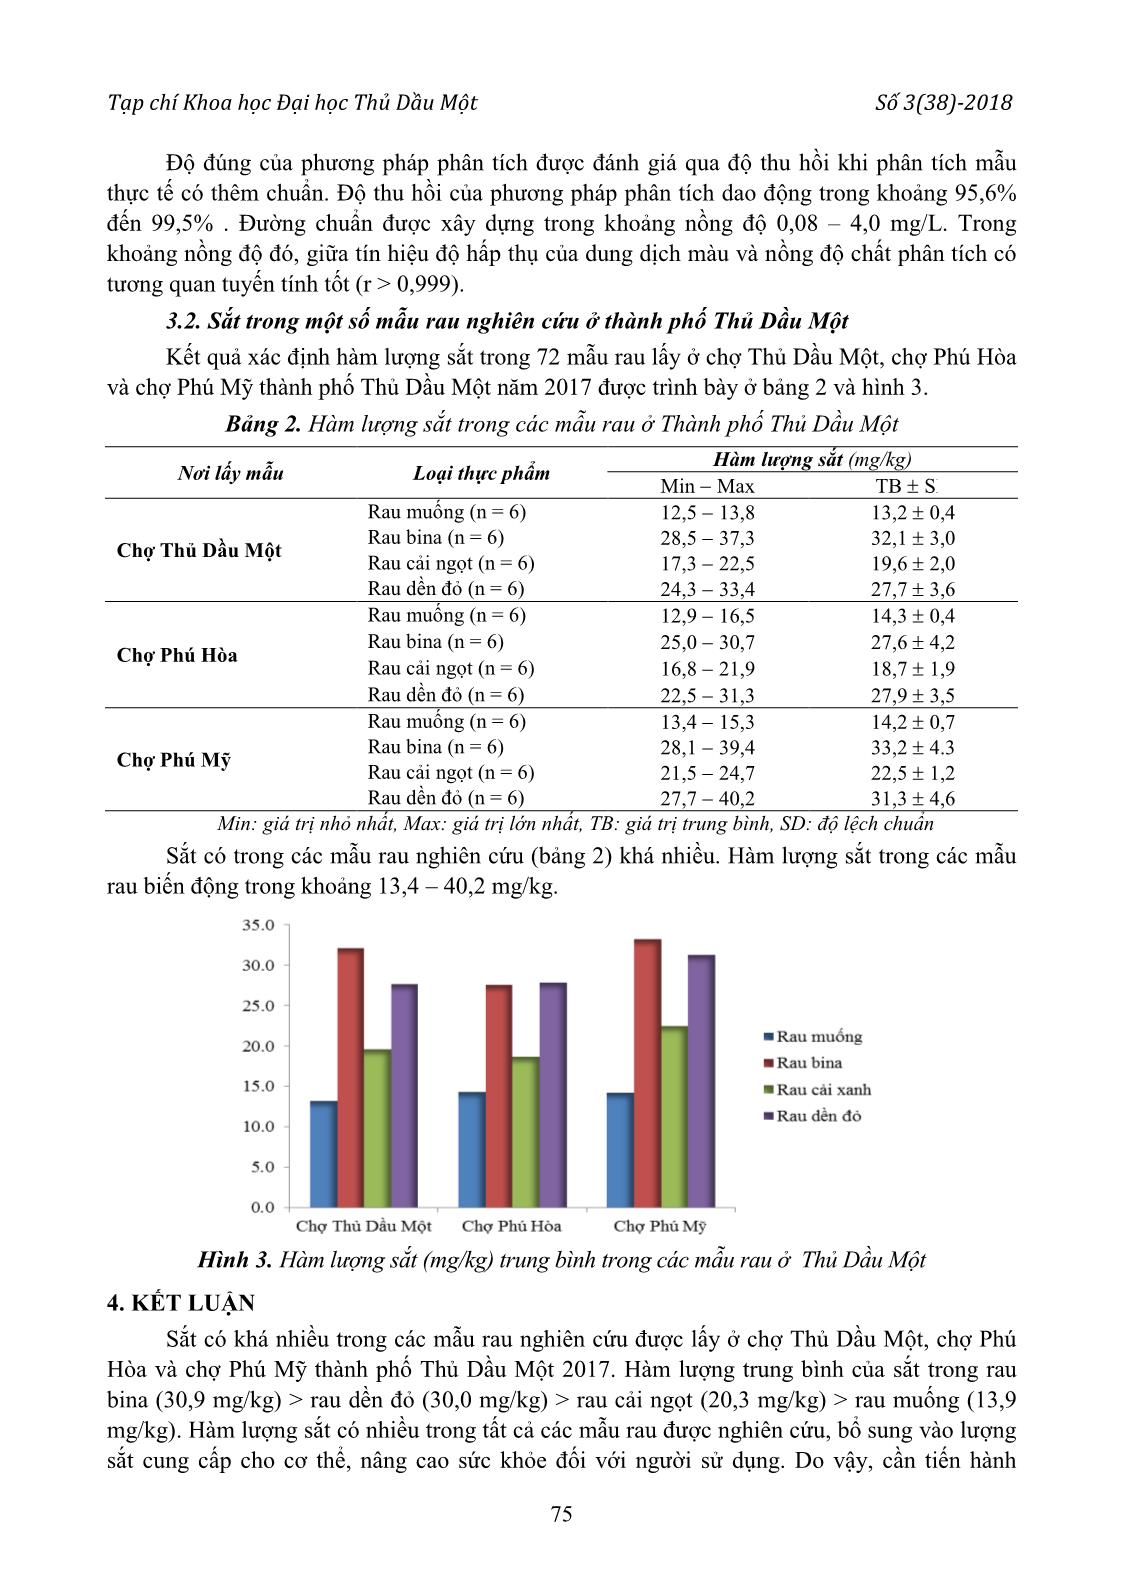 Phân tích và đánh giá hàm lượng sắt trong một số loại rau đang lưu hành ở thành phố Thủ Dầu Một trang 4